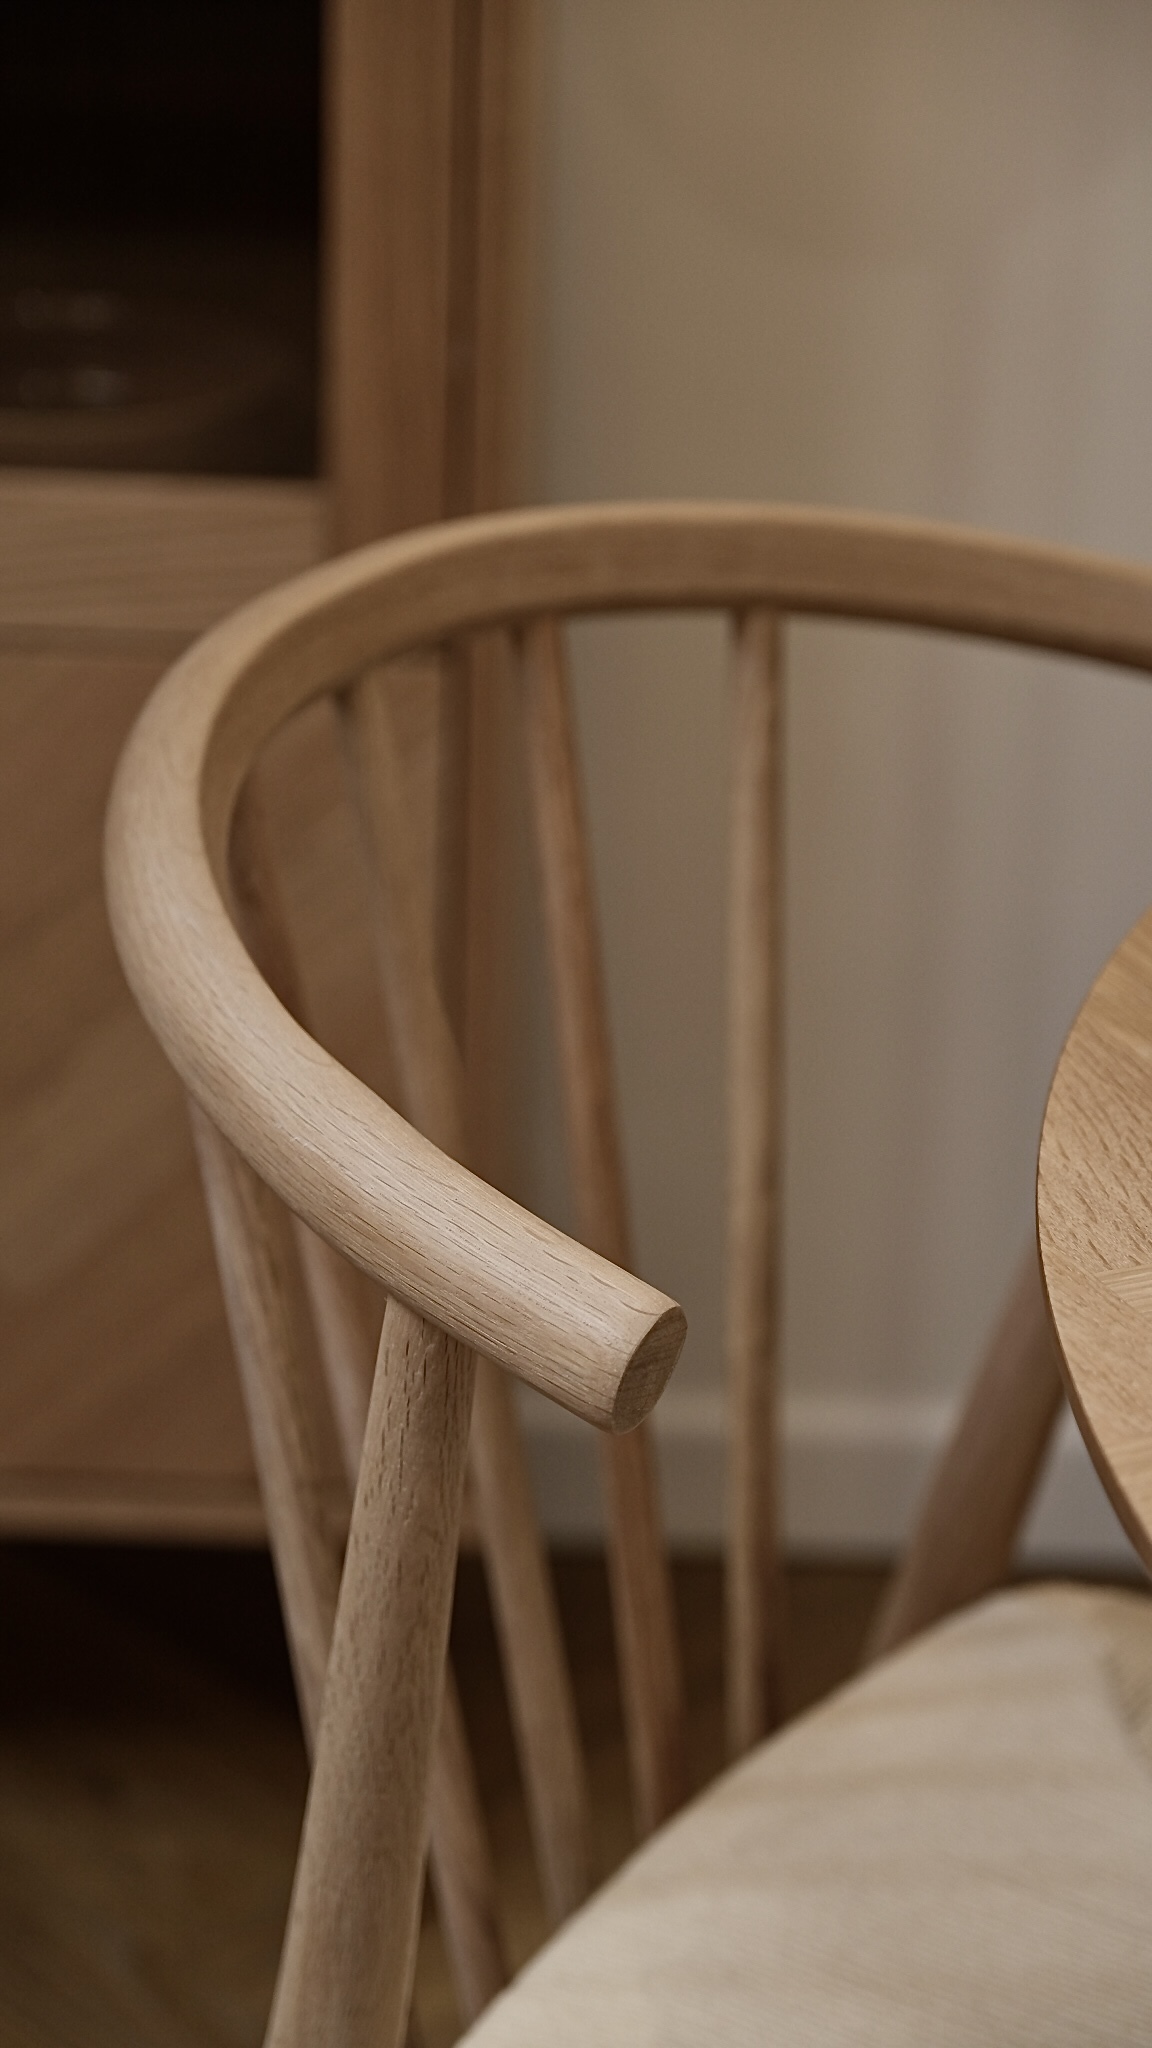 HANSELCA Chaise en bois chêne blanchi